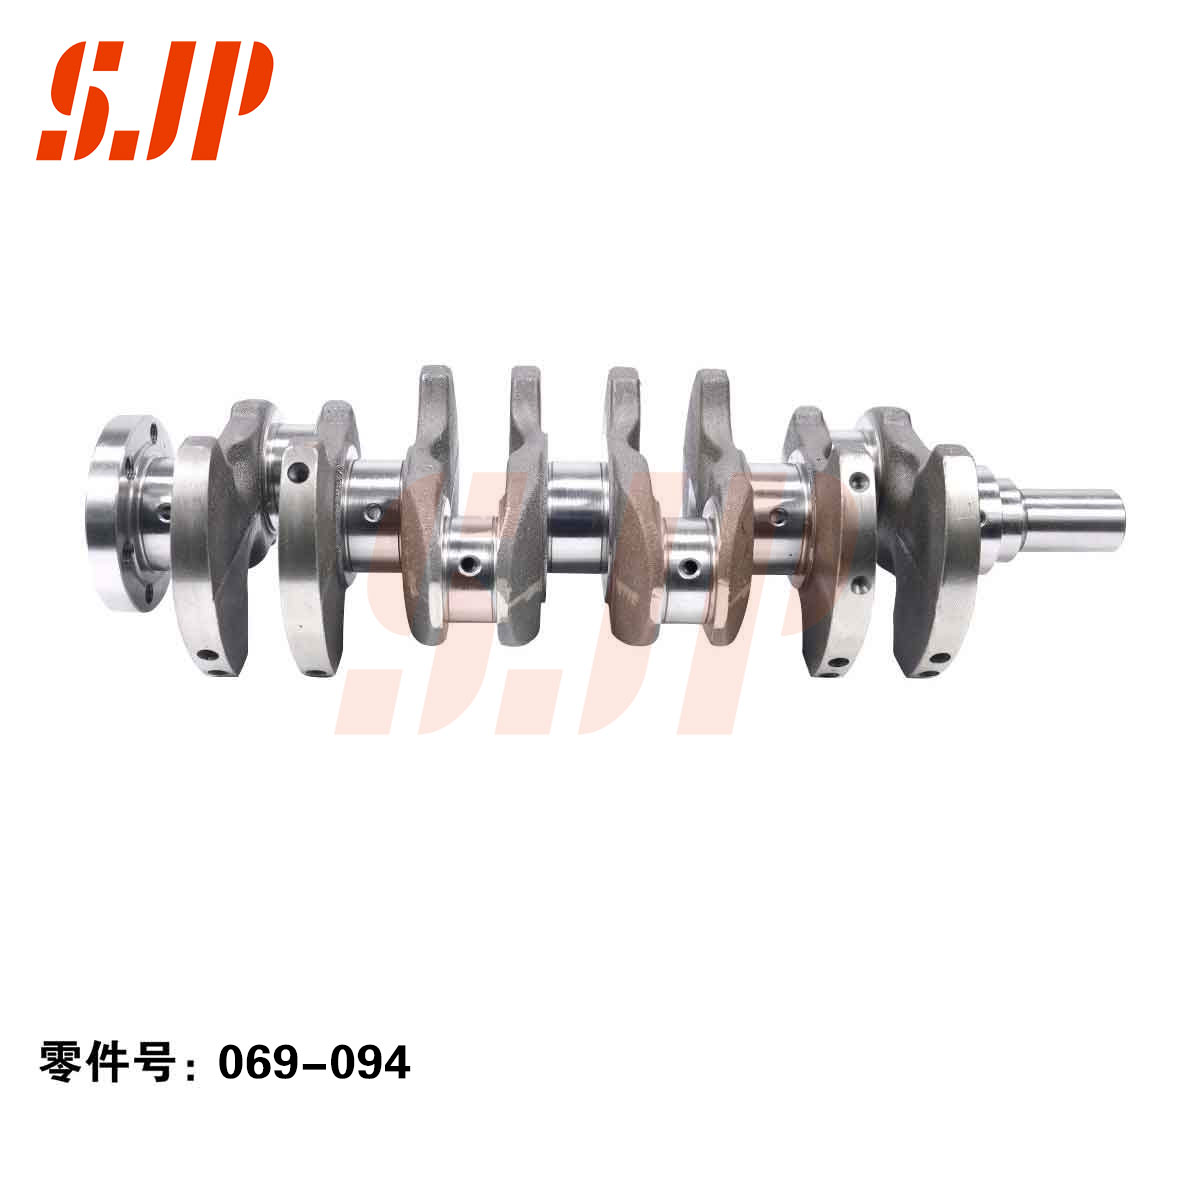 SJ-069-094 Crankshaft For GWM 4G15A/12 Holes